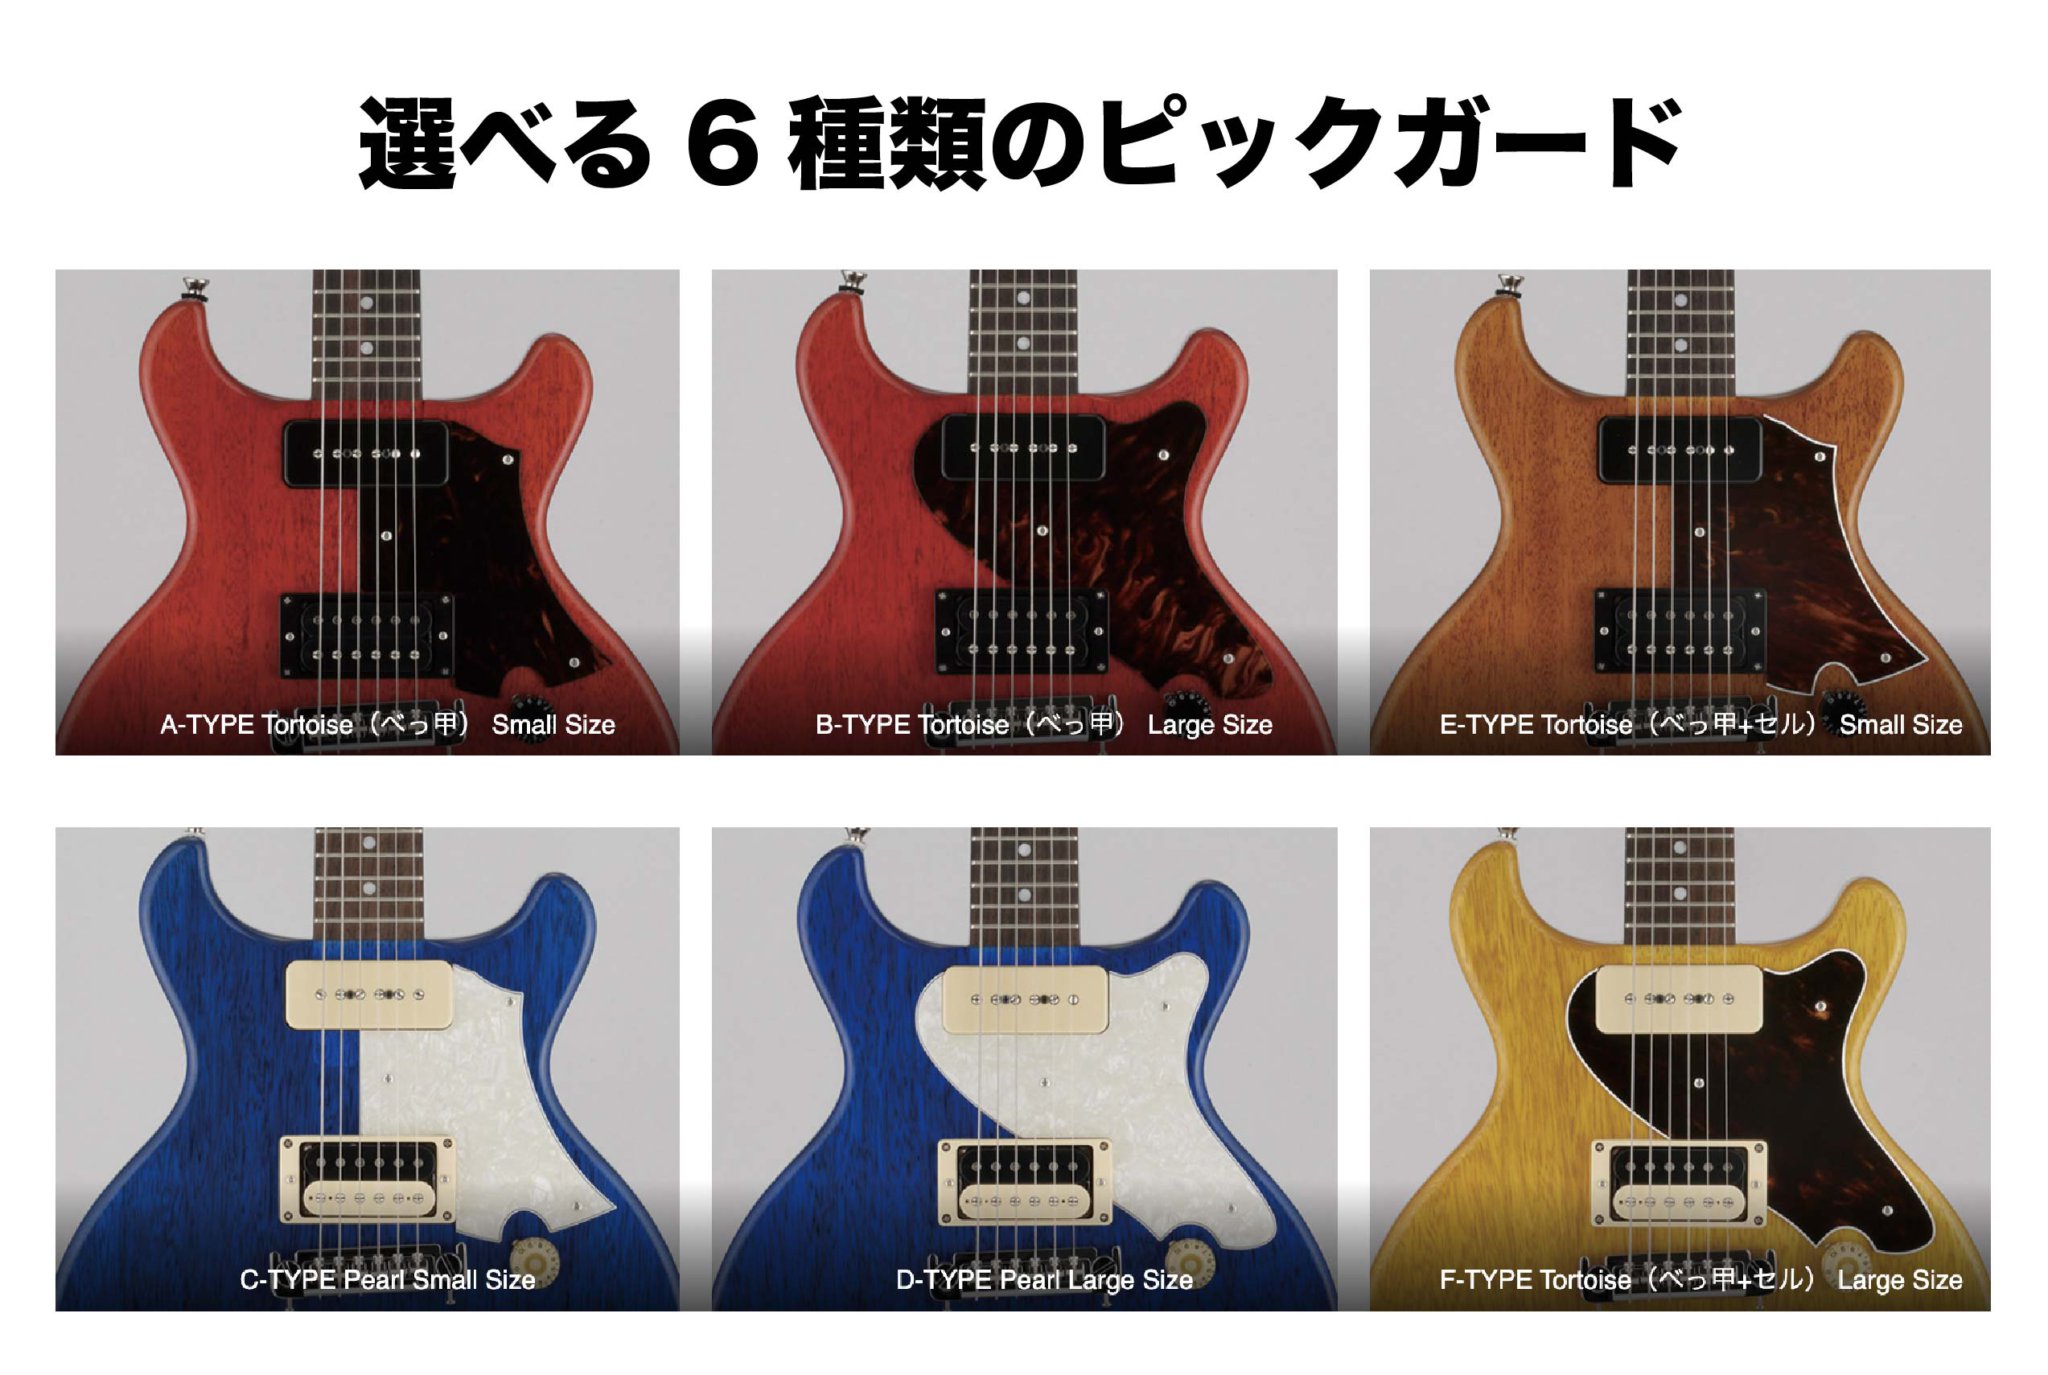 入荷待ち】Rabbit is USA-2 Korina | Blue – Guitar Shop Hoochie's